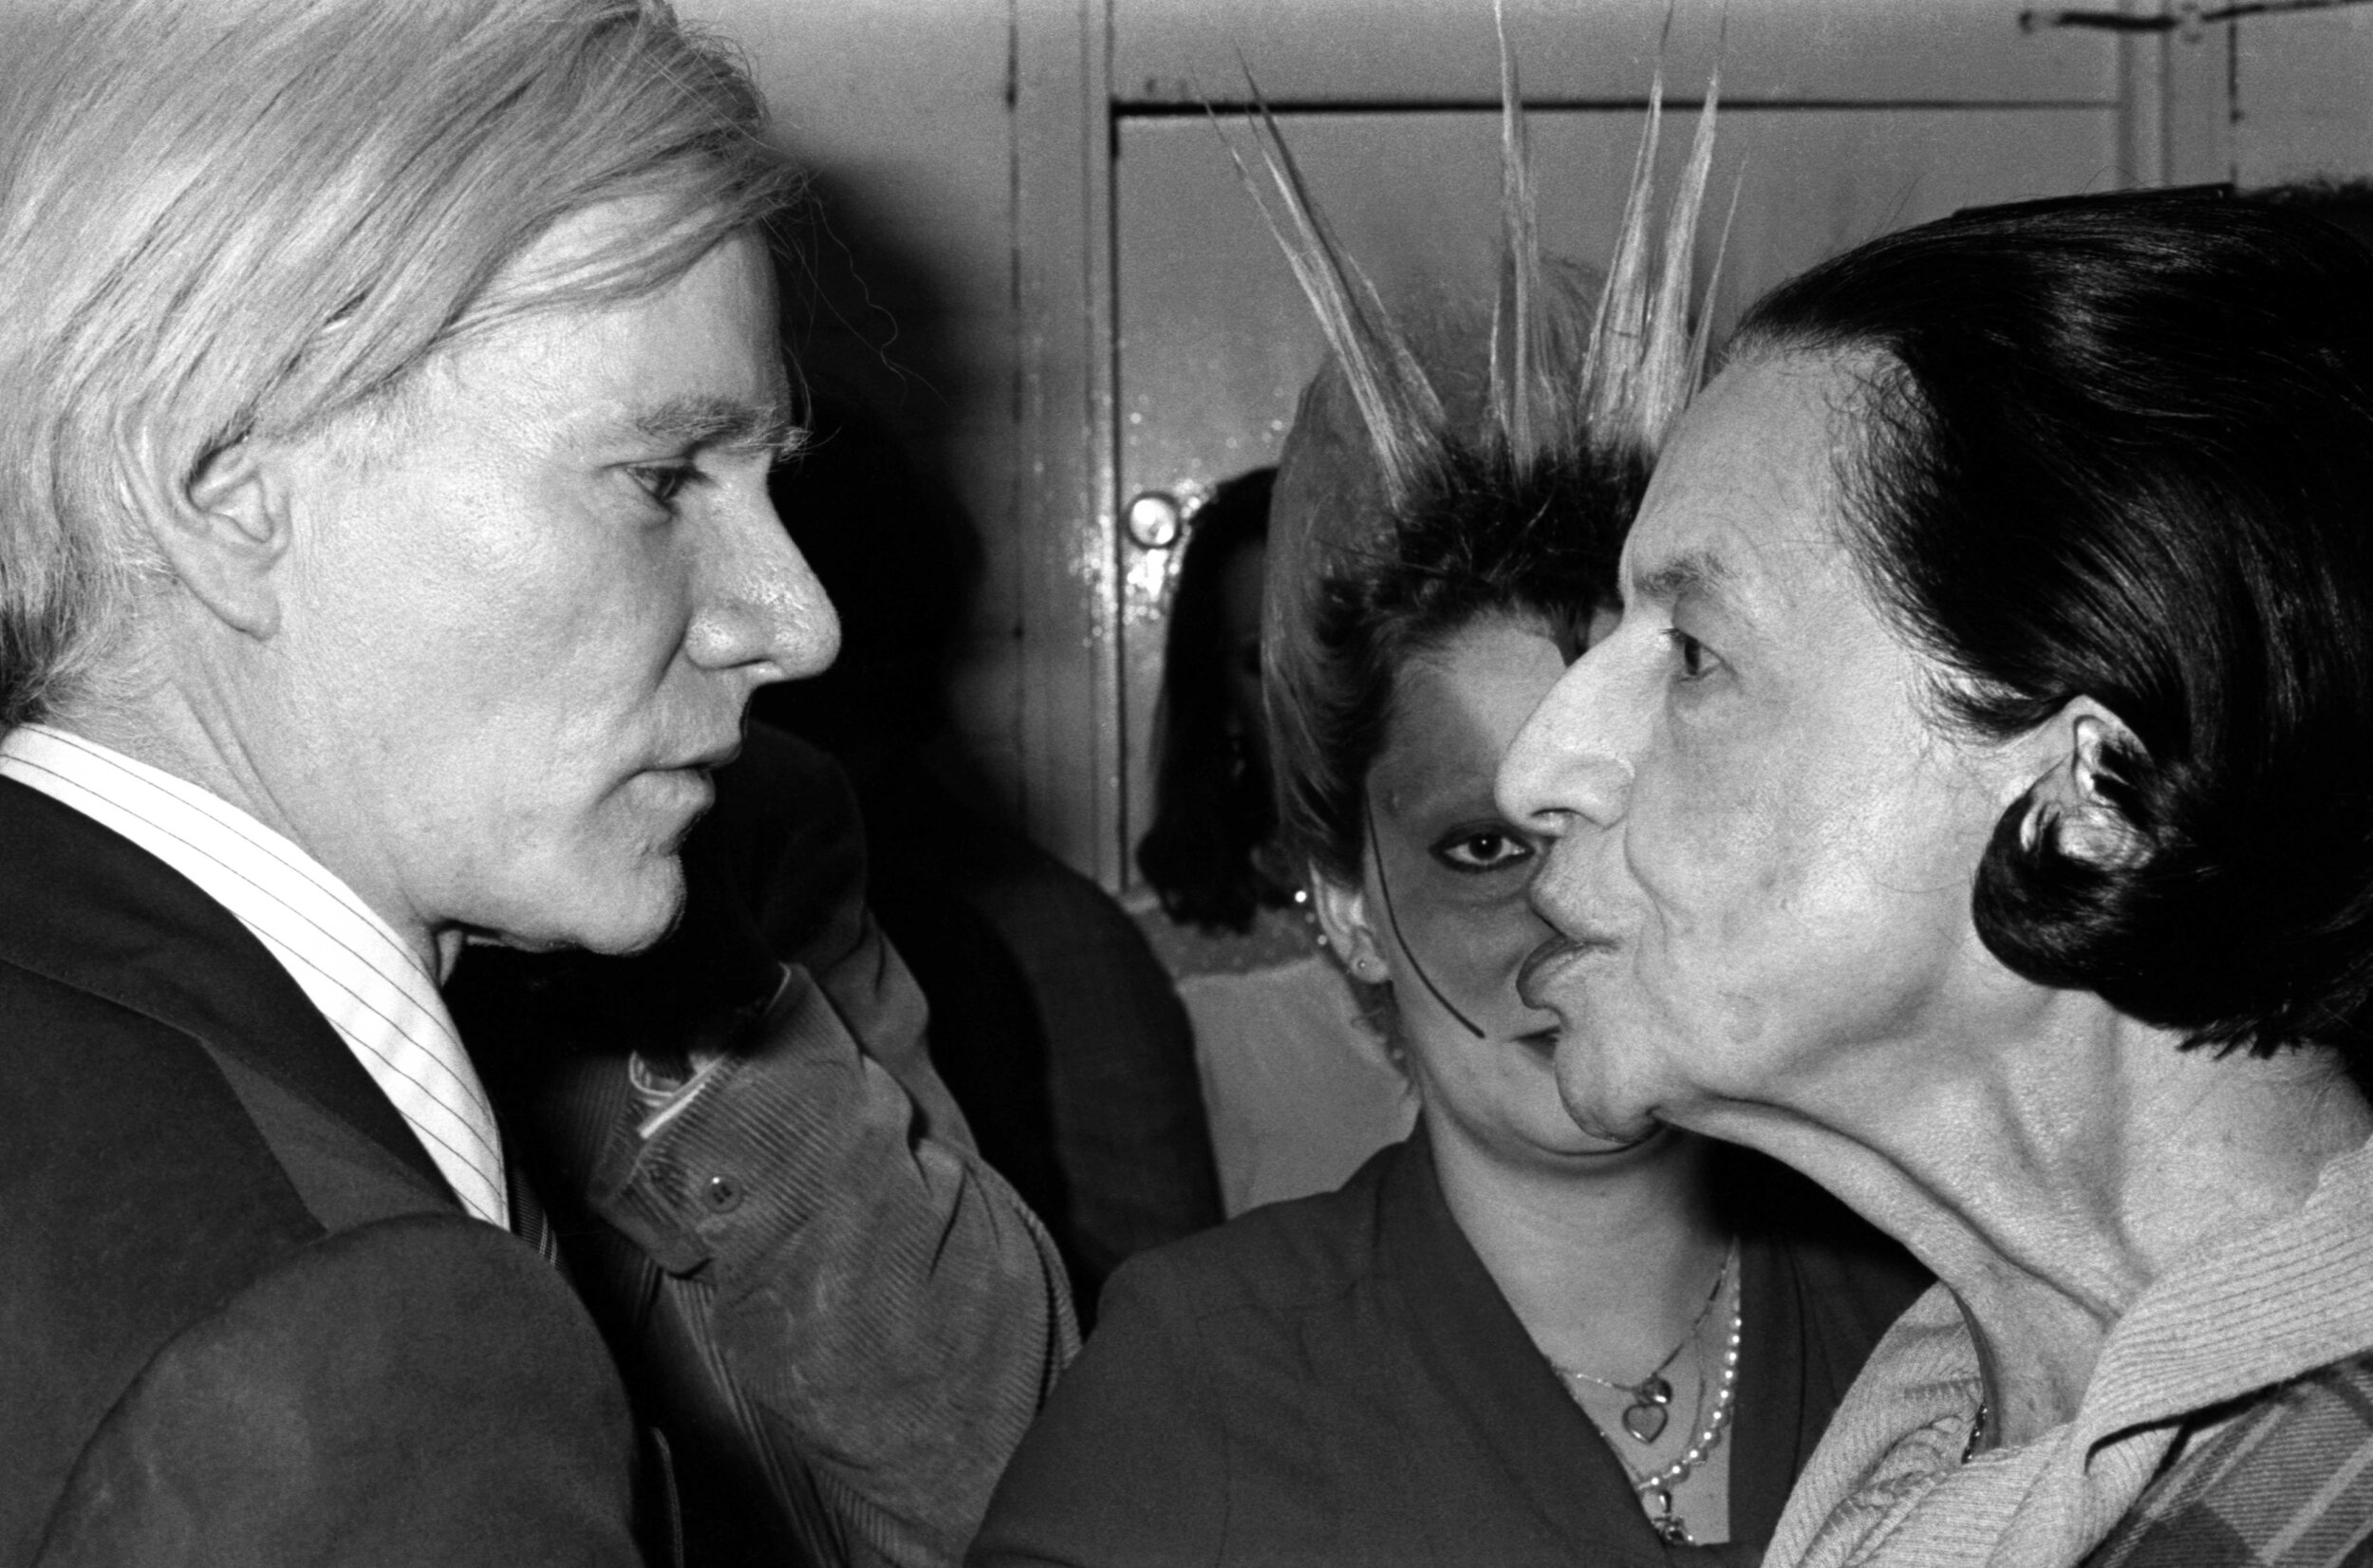 Andy Warhol, Jordan and Diana Vreeland, at the ICA.